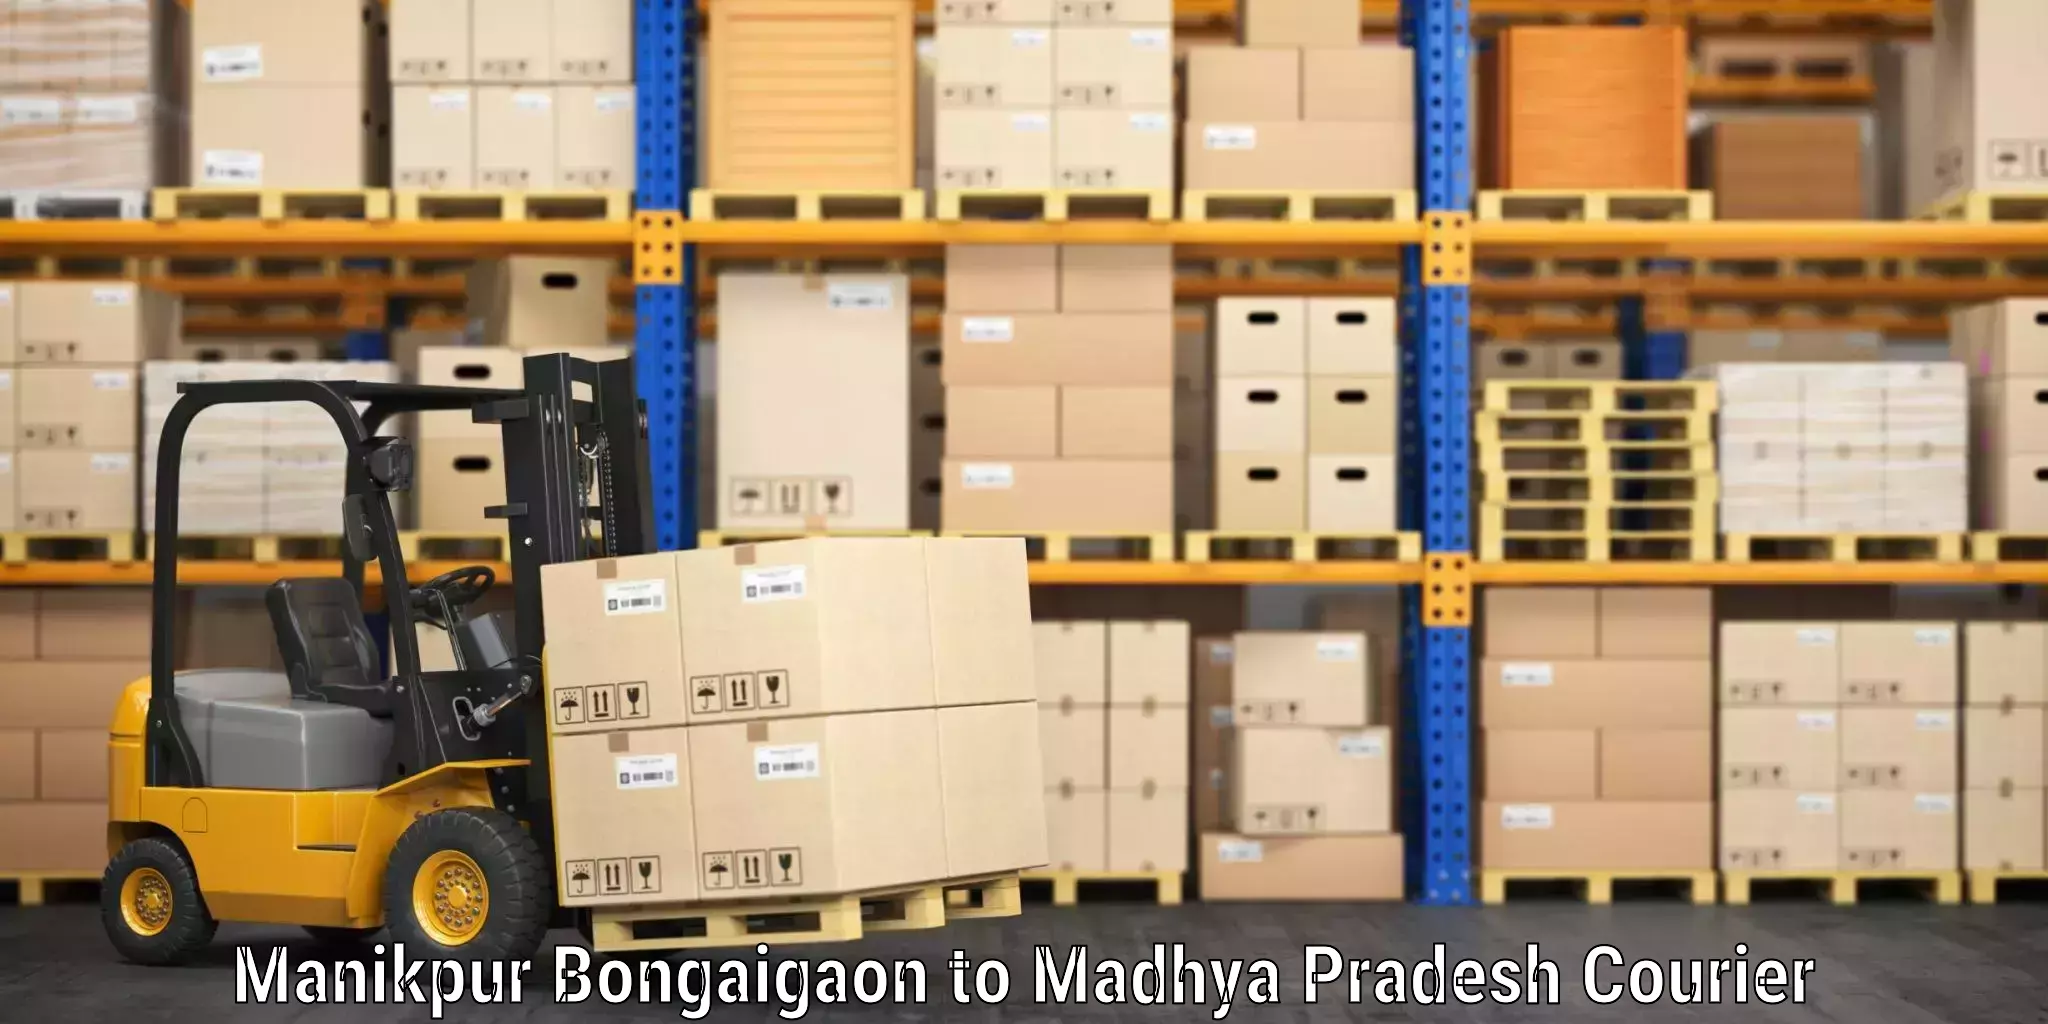 Single item baggage courier Manikpur Bongaigaon to Khandwa